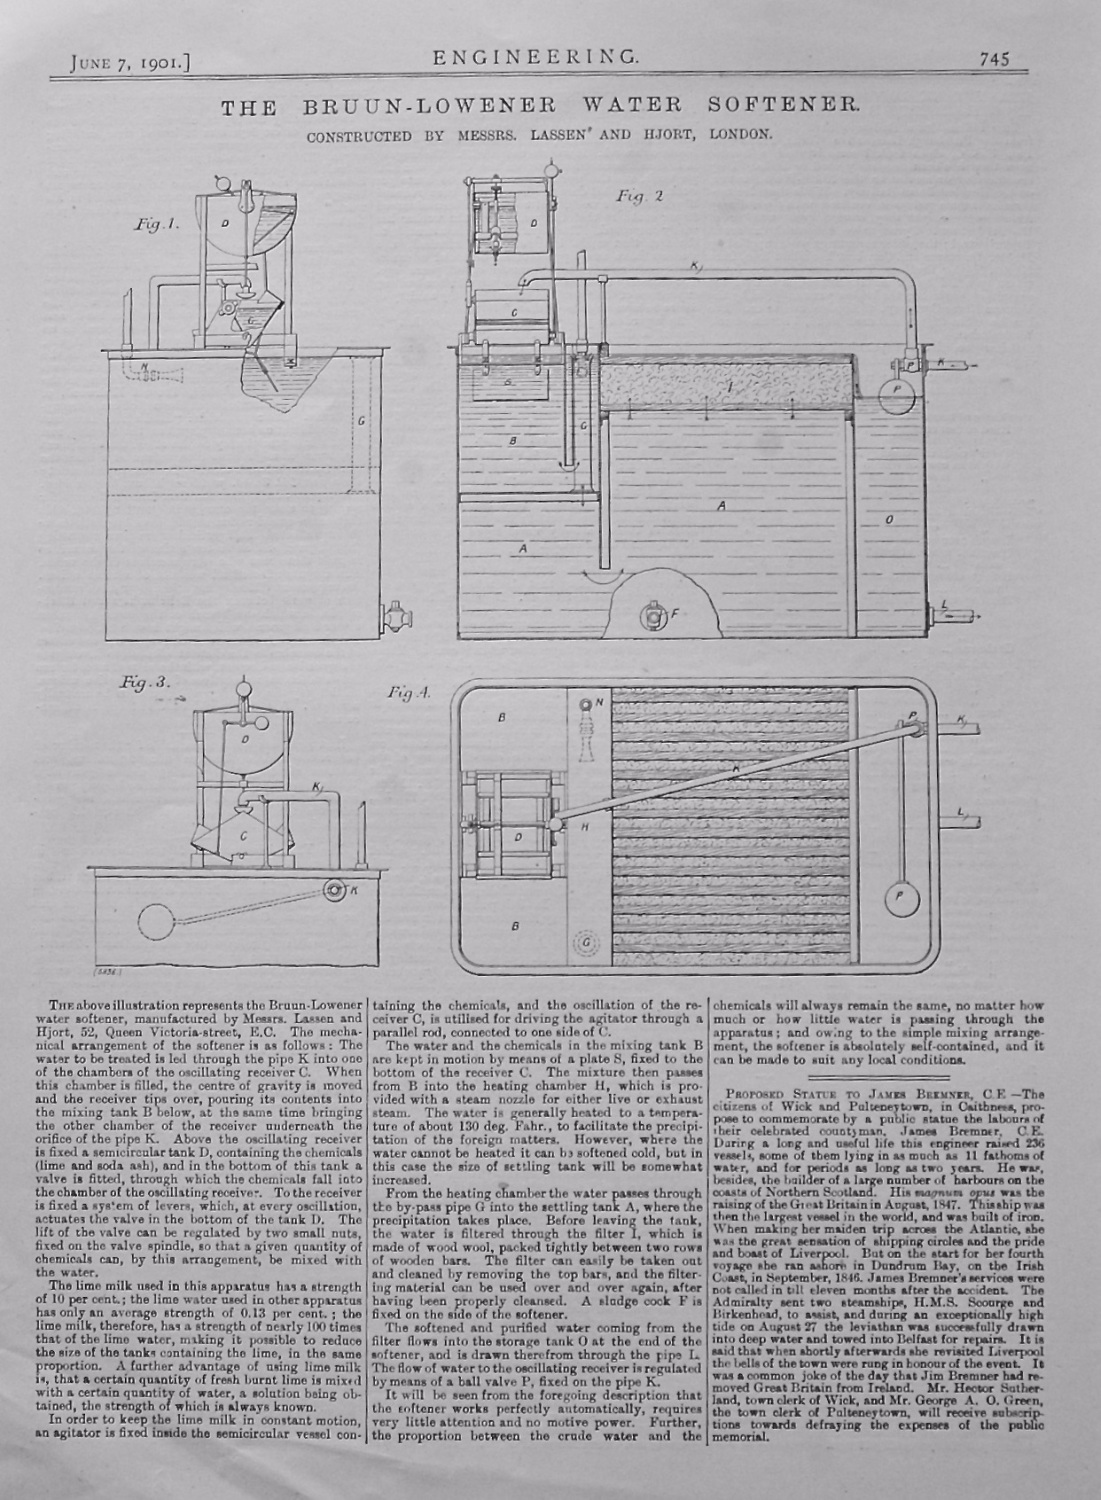 The Bruun-Lowener Water Softener.  1901